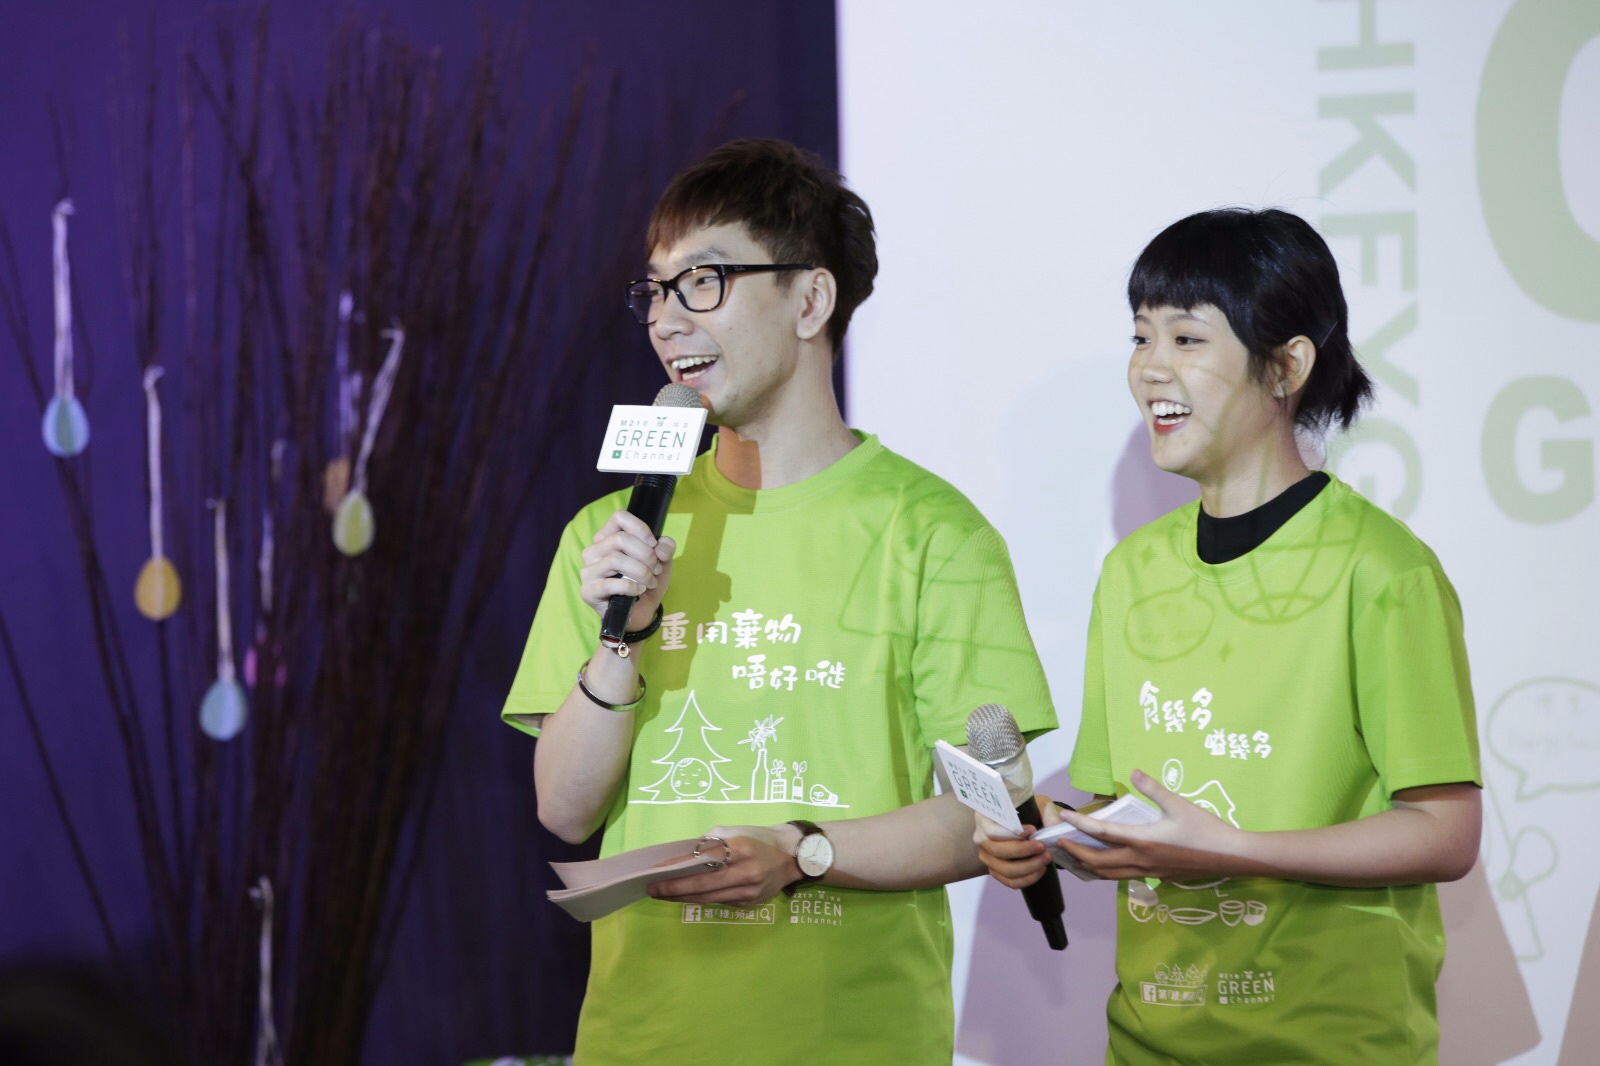 細眼之司儀主持紀錄: 「活動主持」香港青年協會「邁向綠色機構」啟動禮暨第「綠」頻道開台儀式